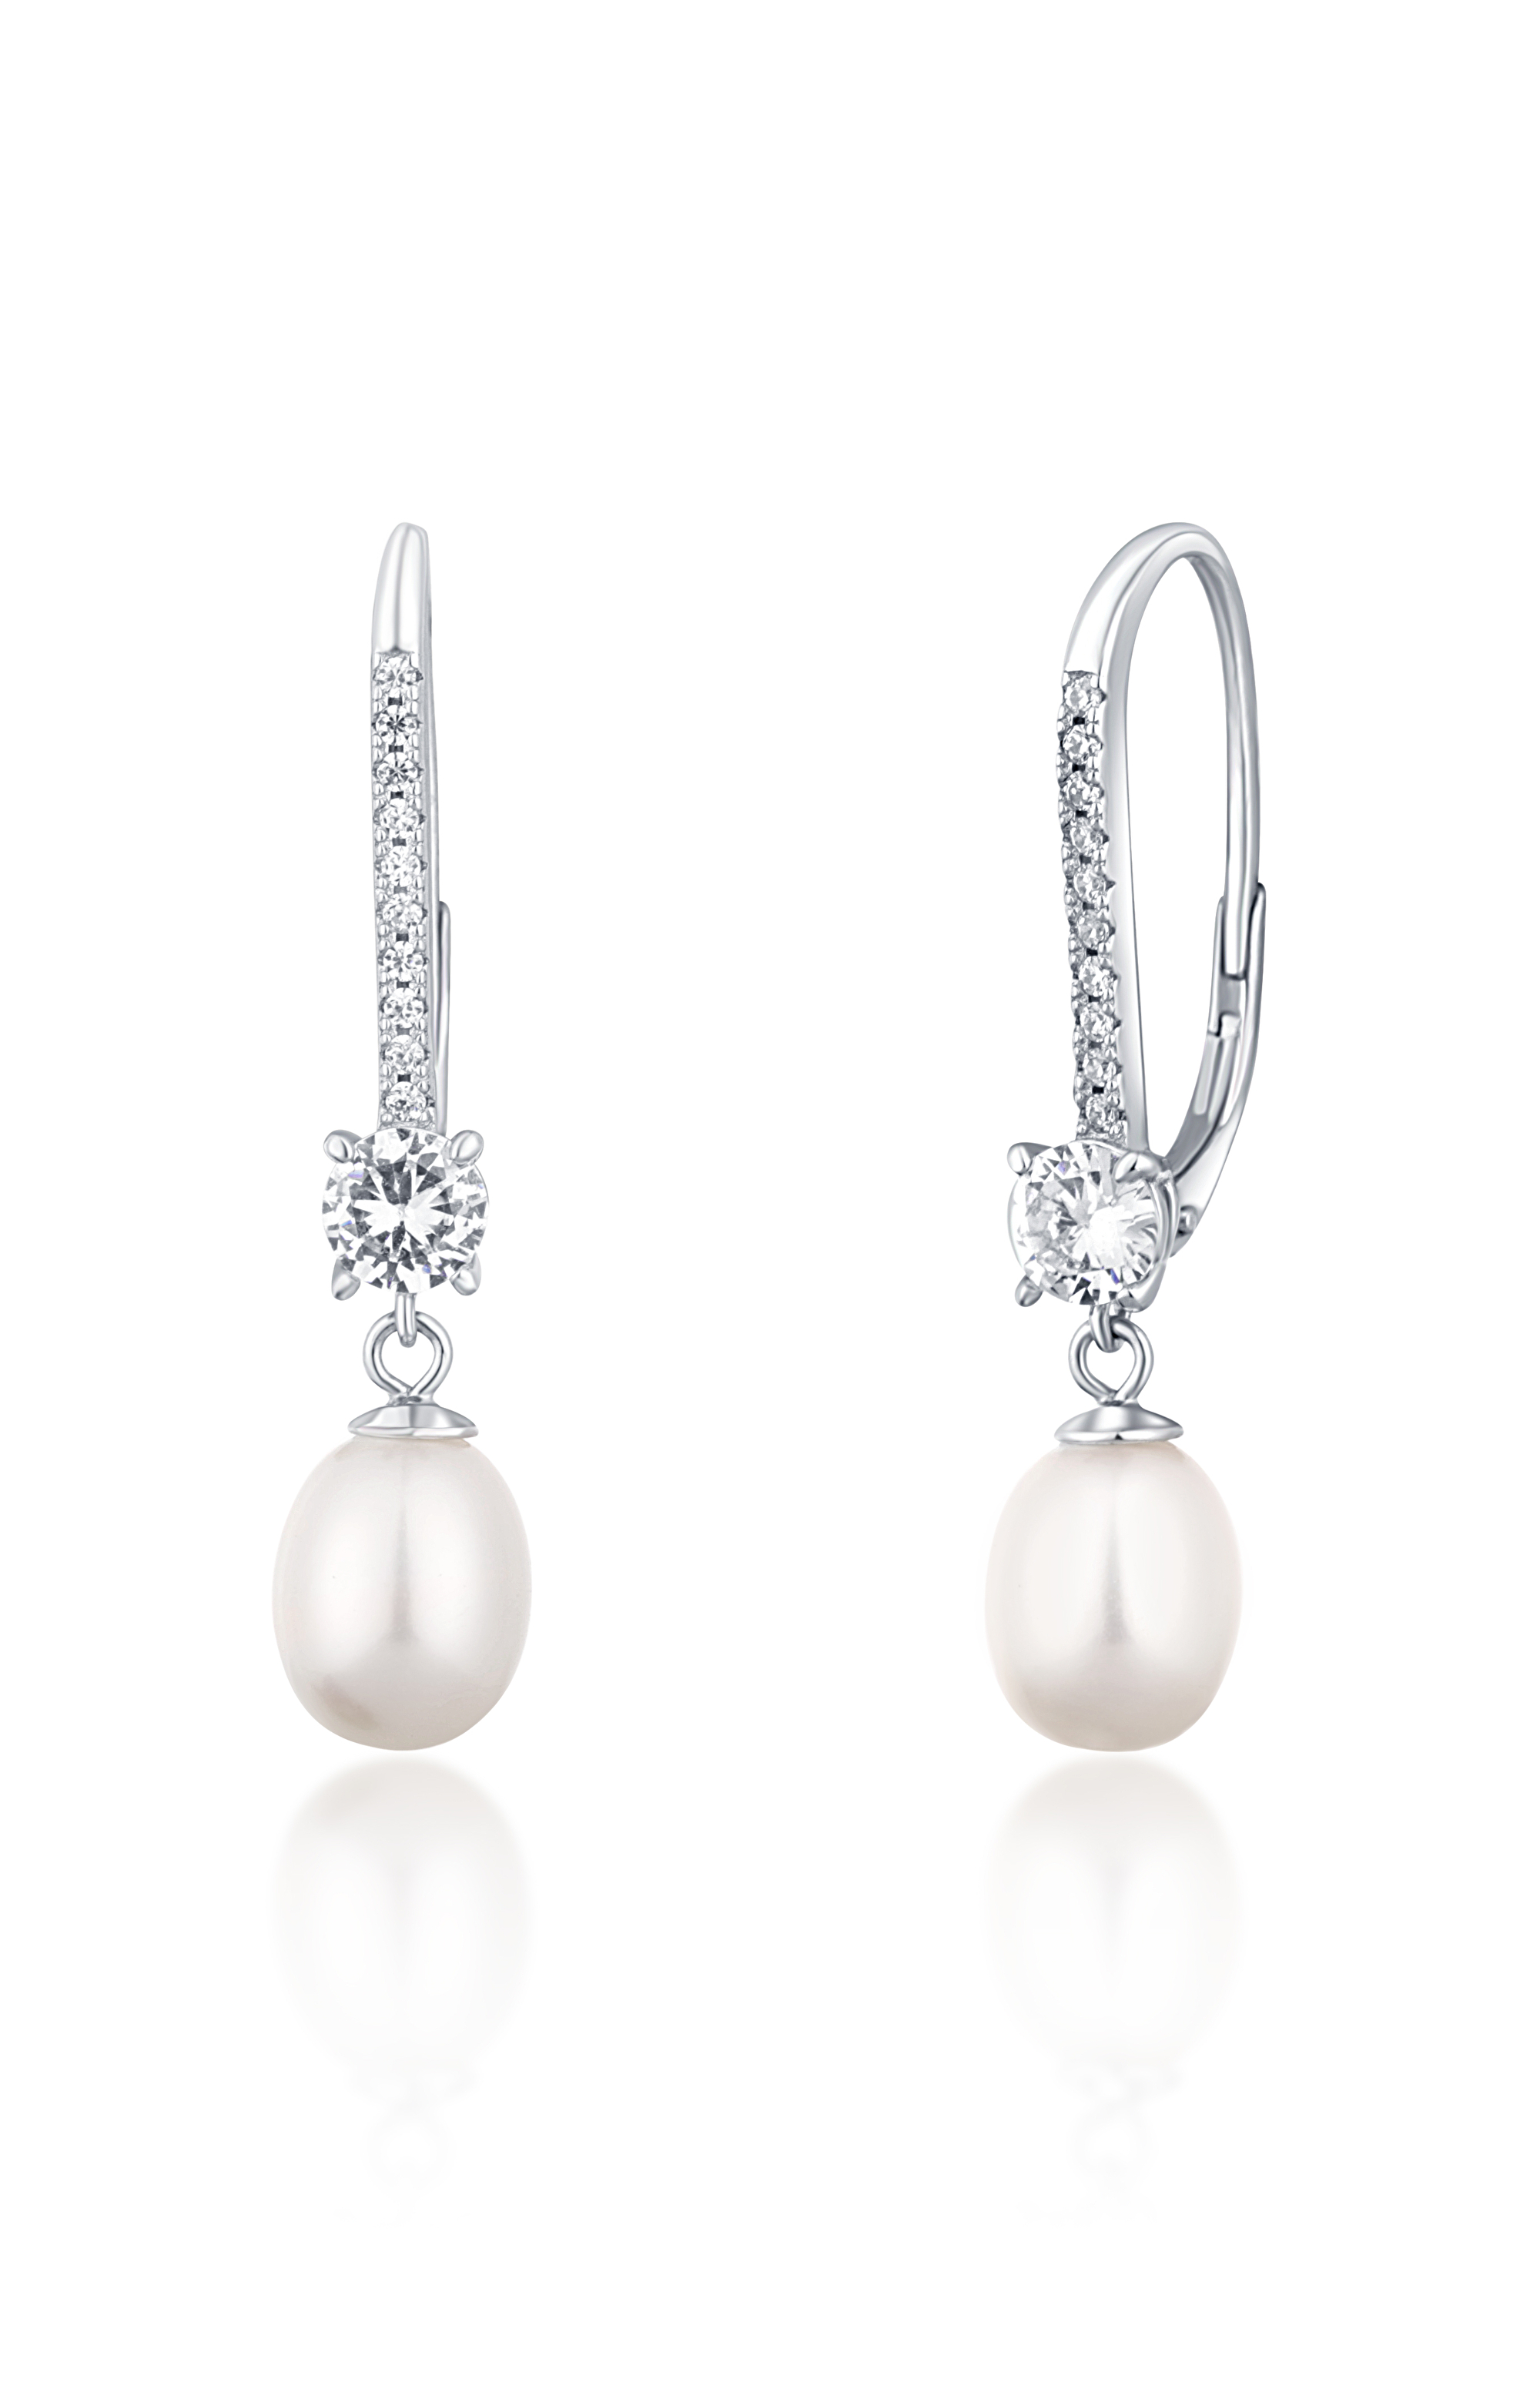 JwL Luxury Pearls Luxusní stříbrné náušnice s pravými perlami JL0717